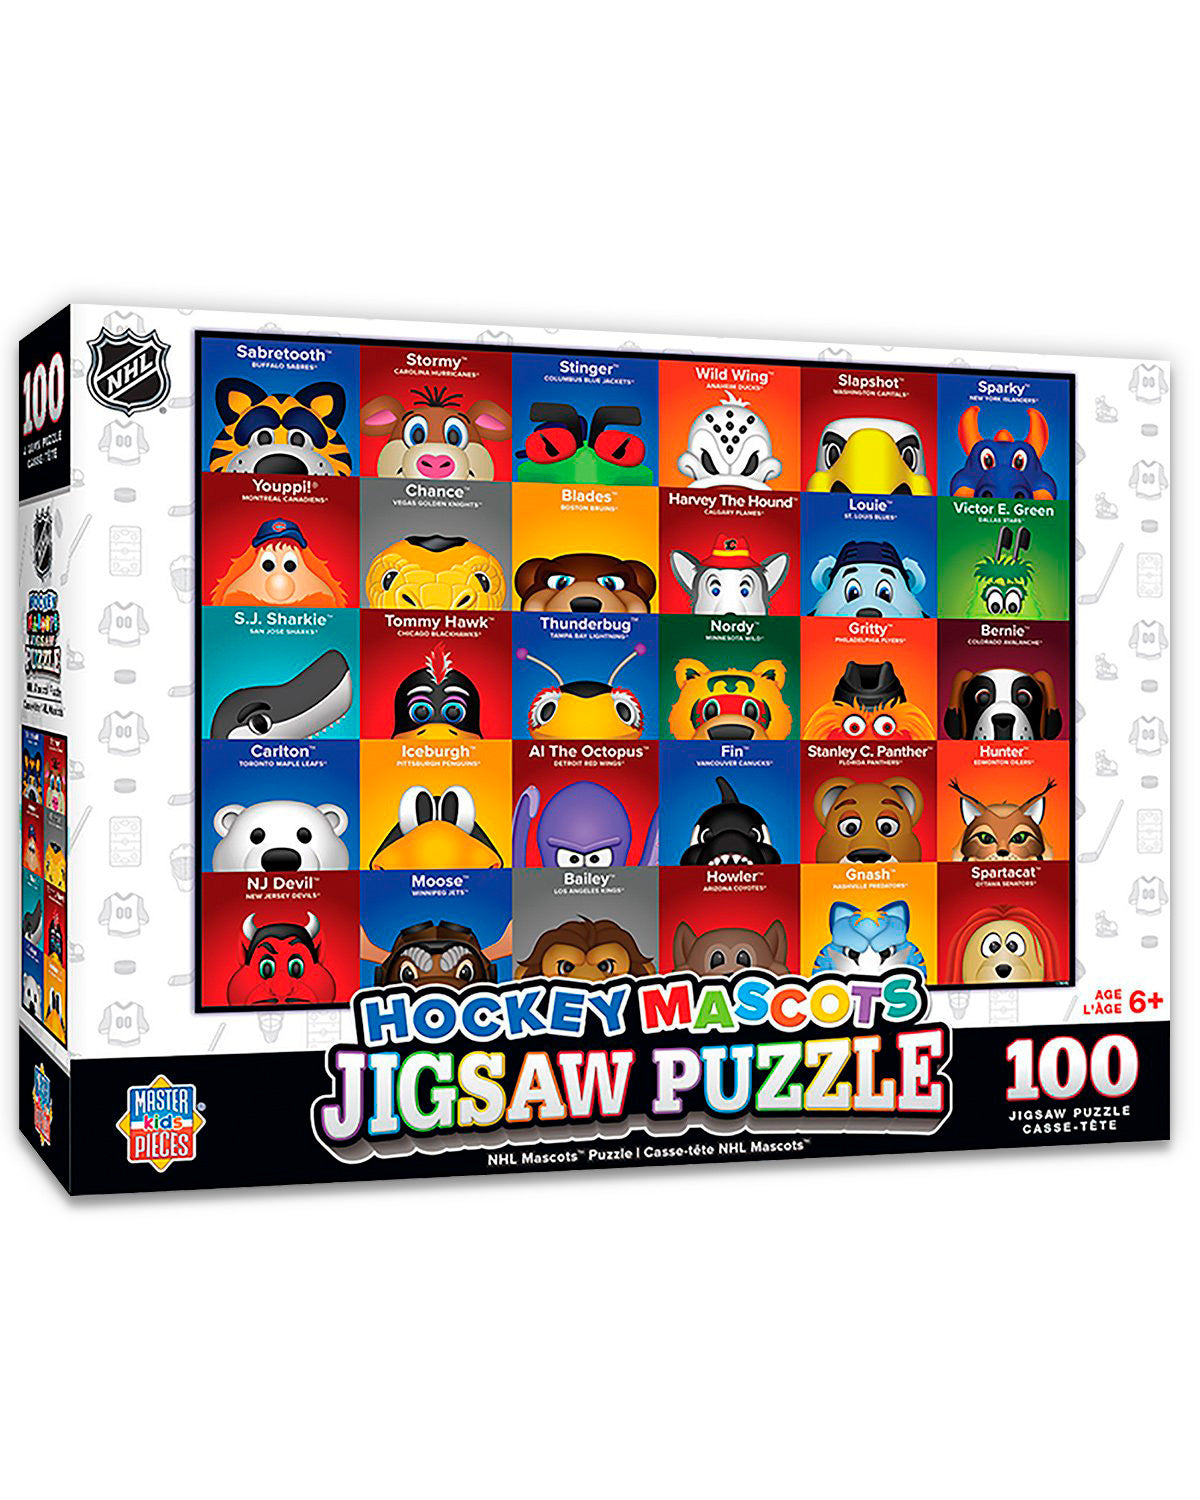 Minimalist NHL Mascot Jigsaw Puzzle